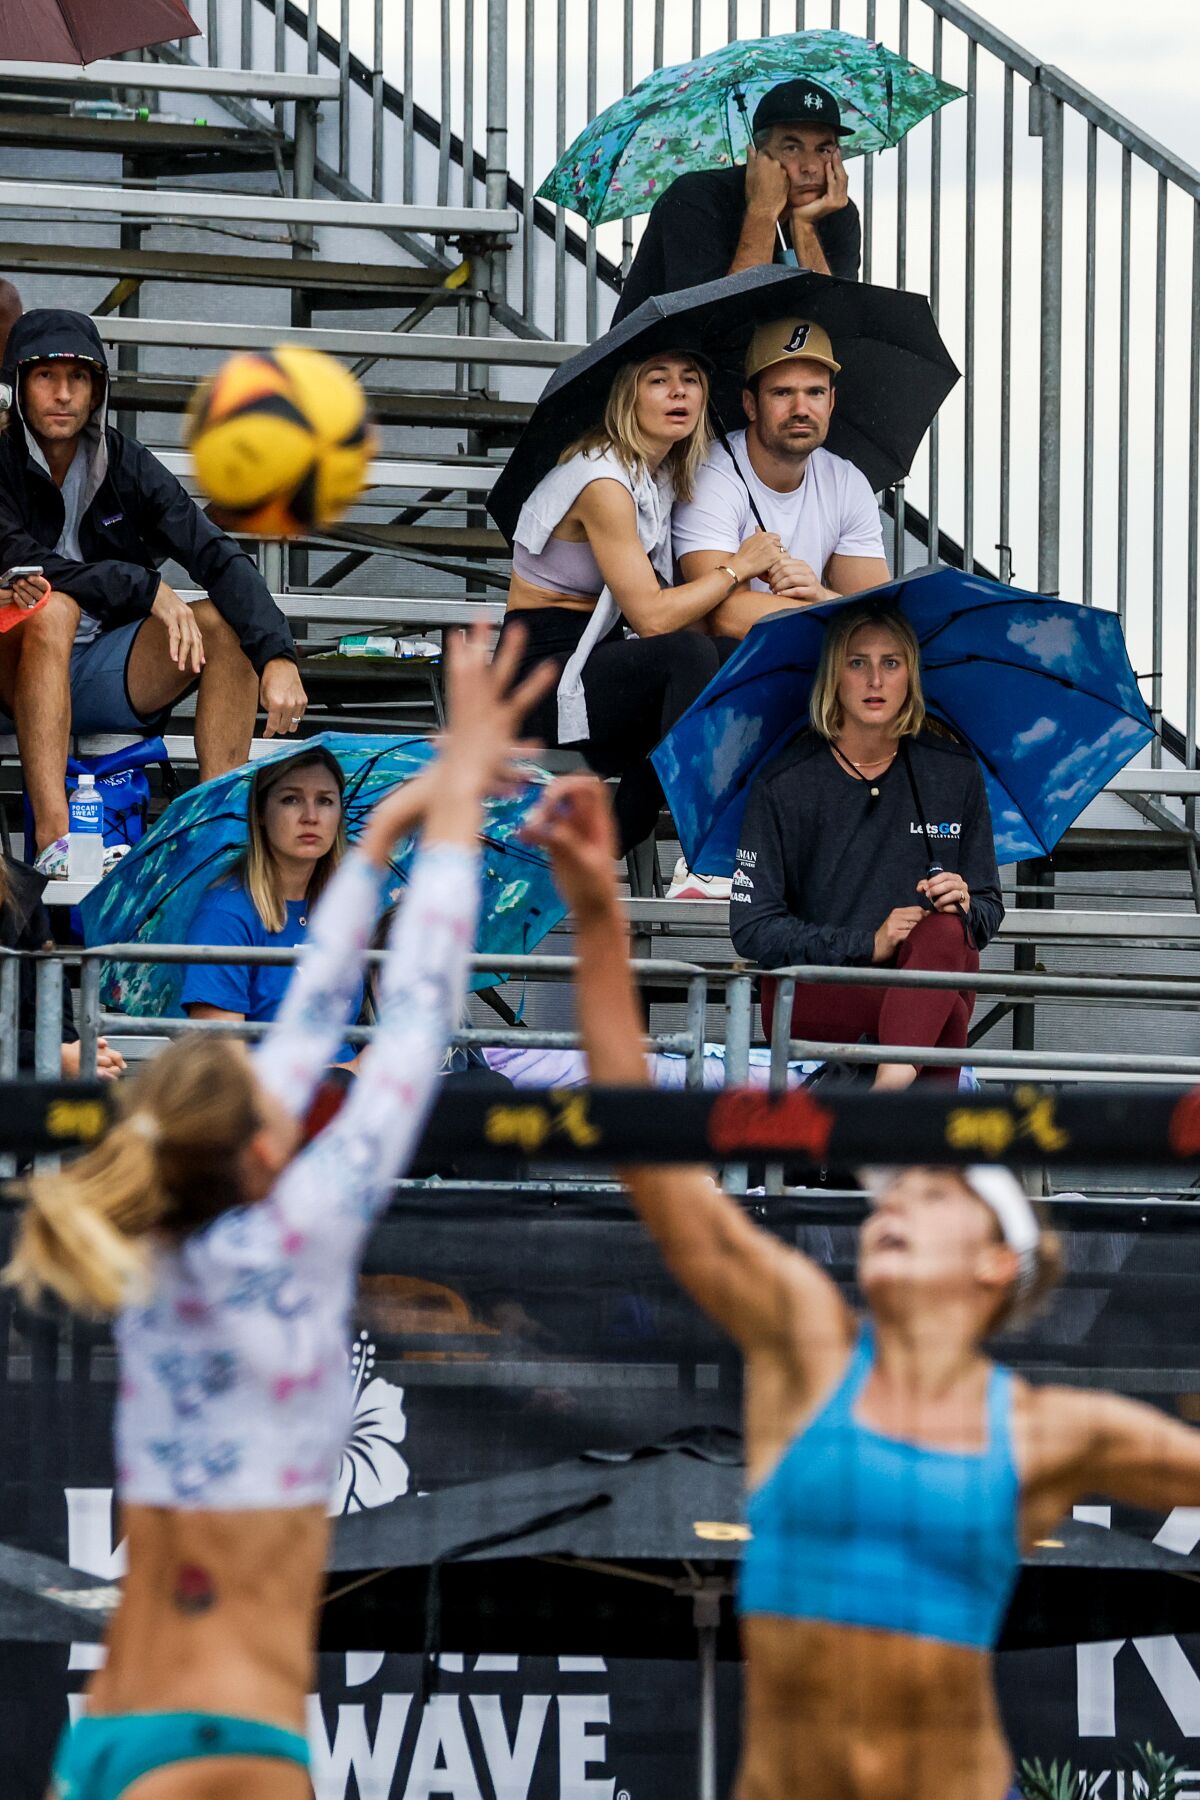 Les fans regardent un match assis sous la pluie avec des parapluies à l'AVP Manhattan Beach Open dimanche.